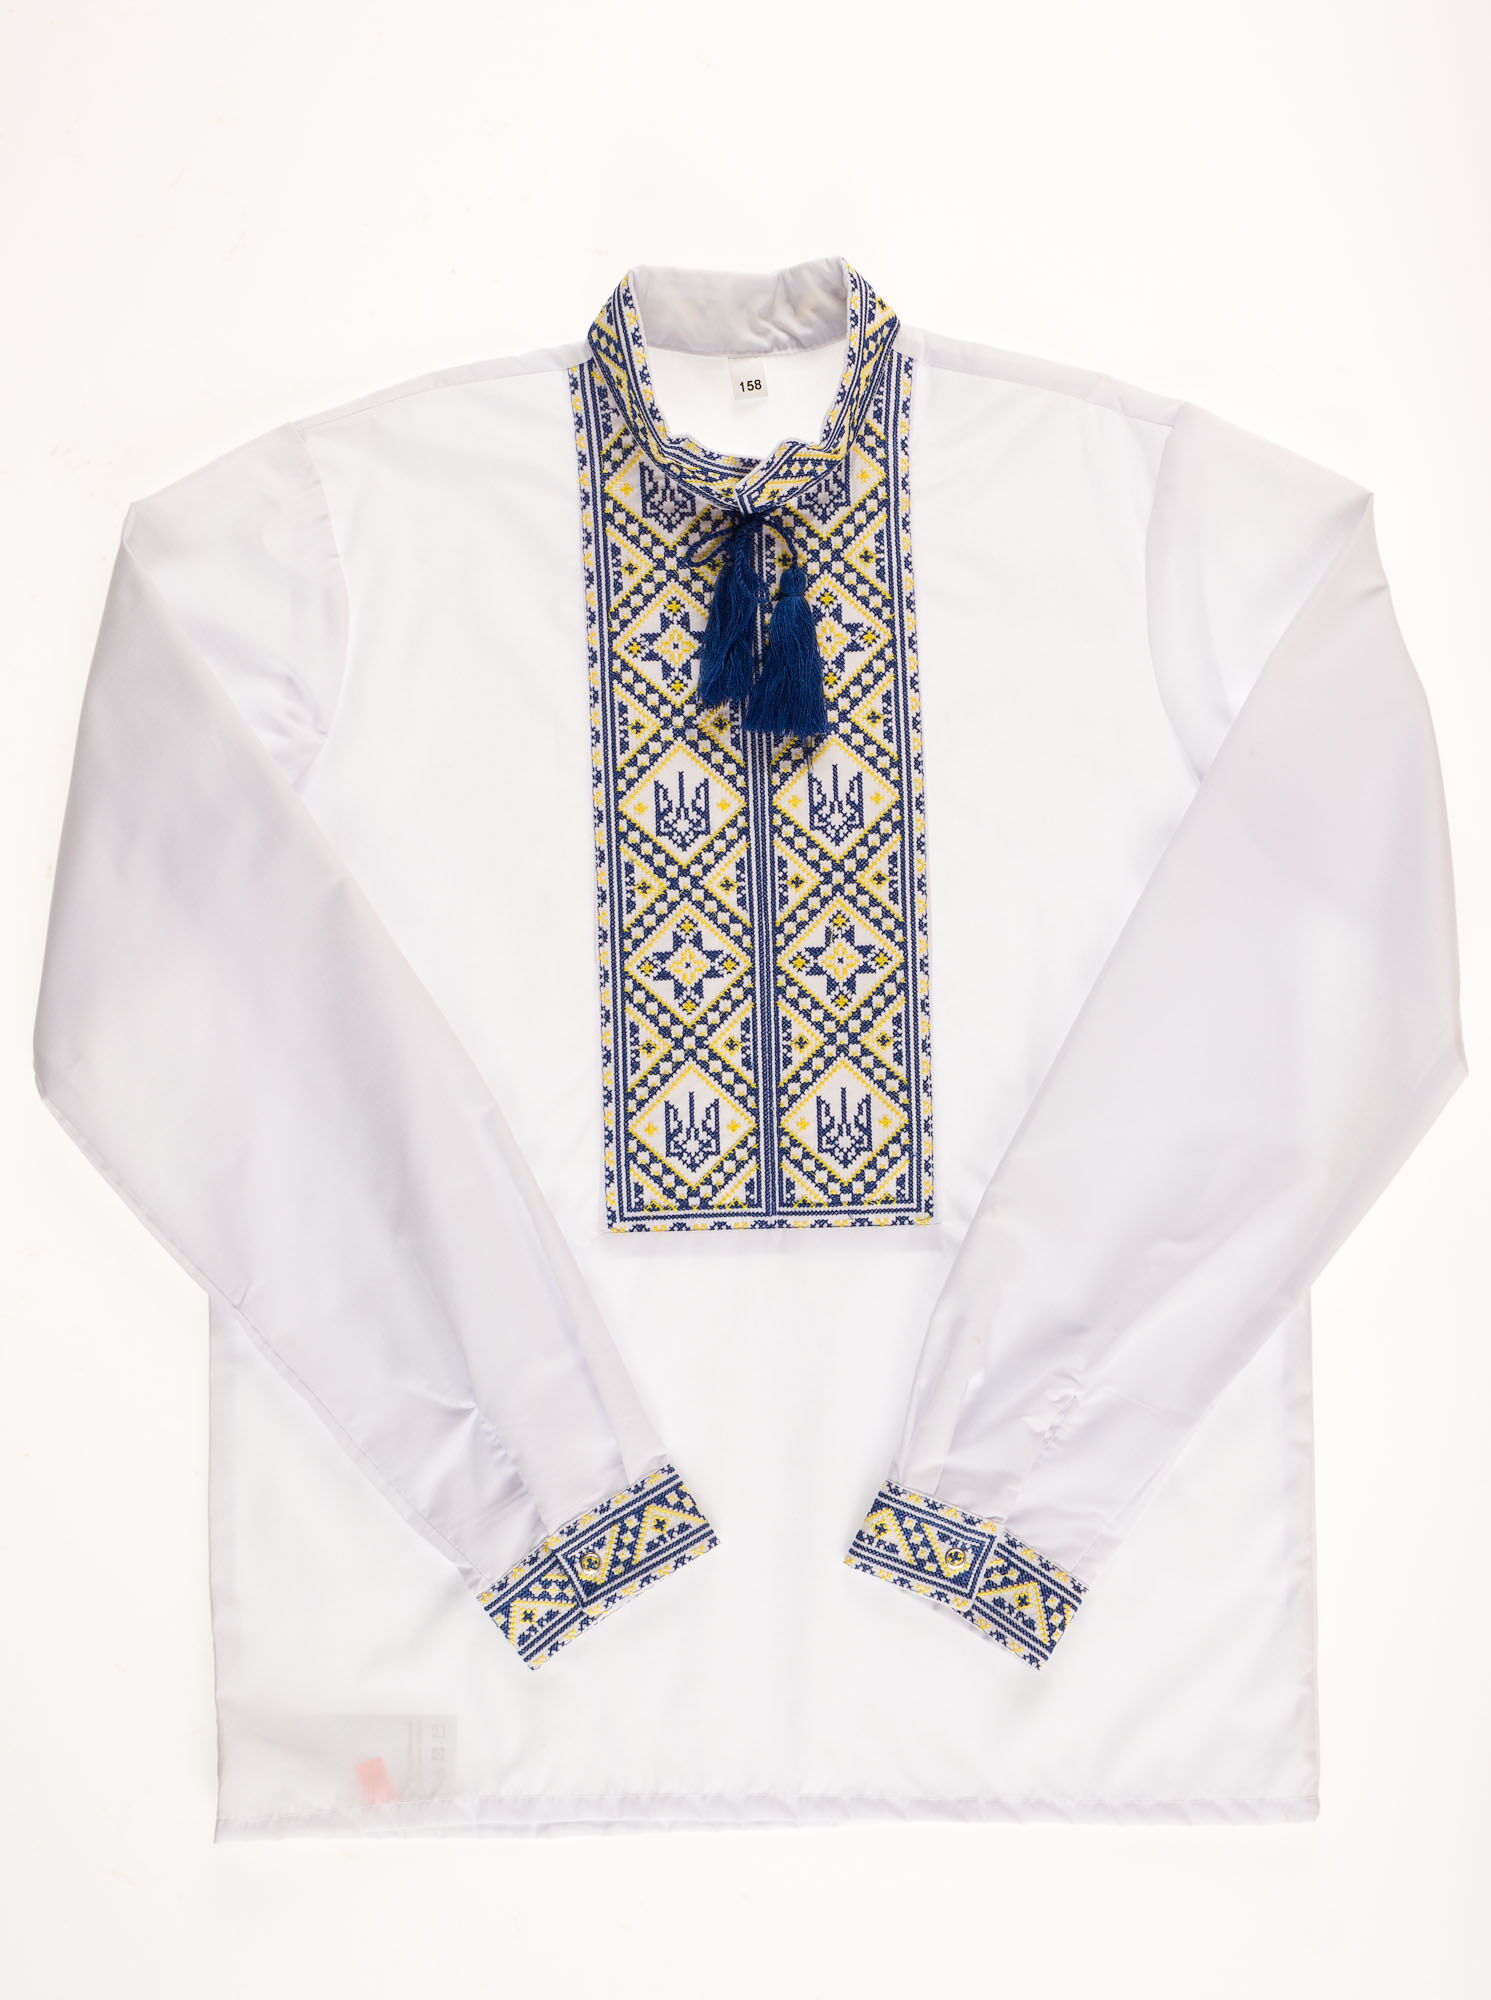 Вышиванка-сорочка для мальчика Украина Тризуб синяя 2325 - цена